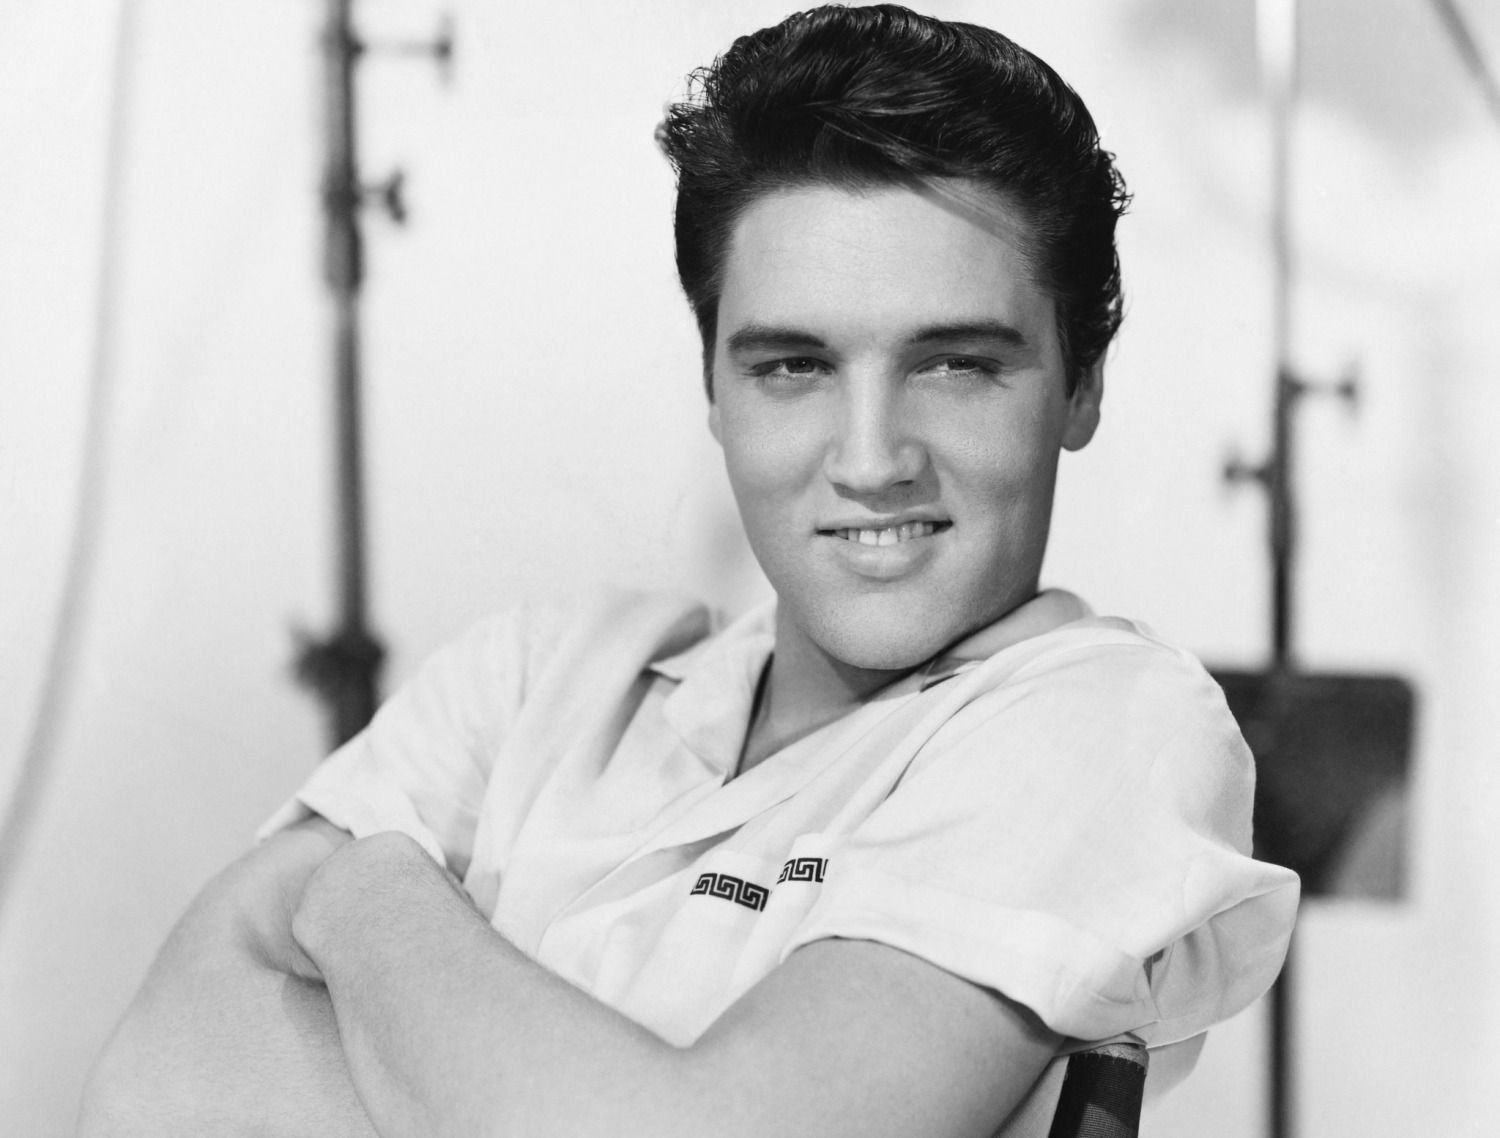 Subastan la colección pérdida de joyas de Elvis Presley